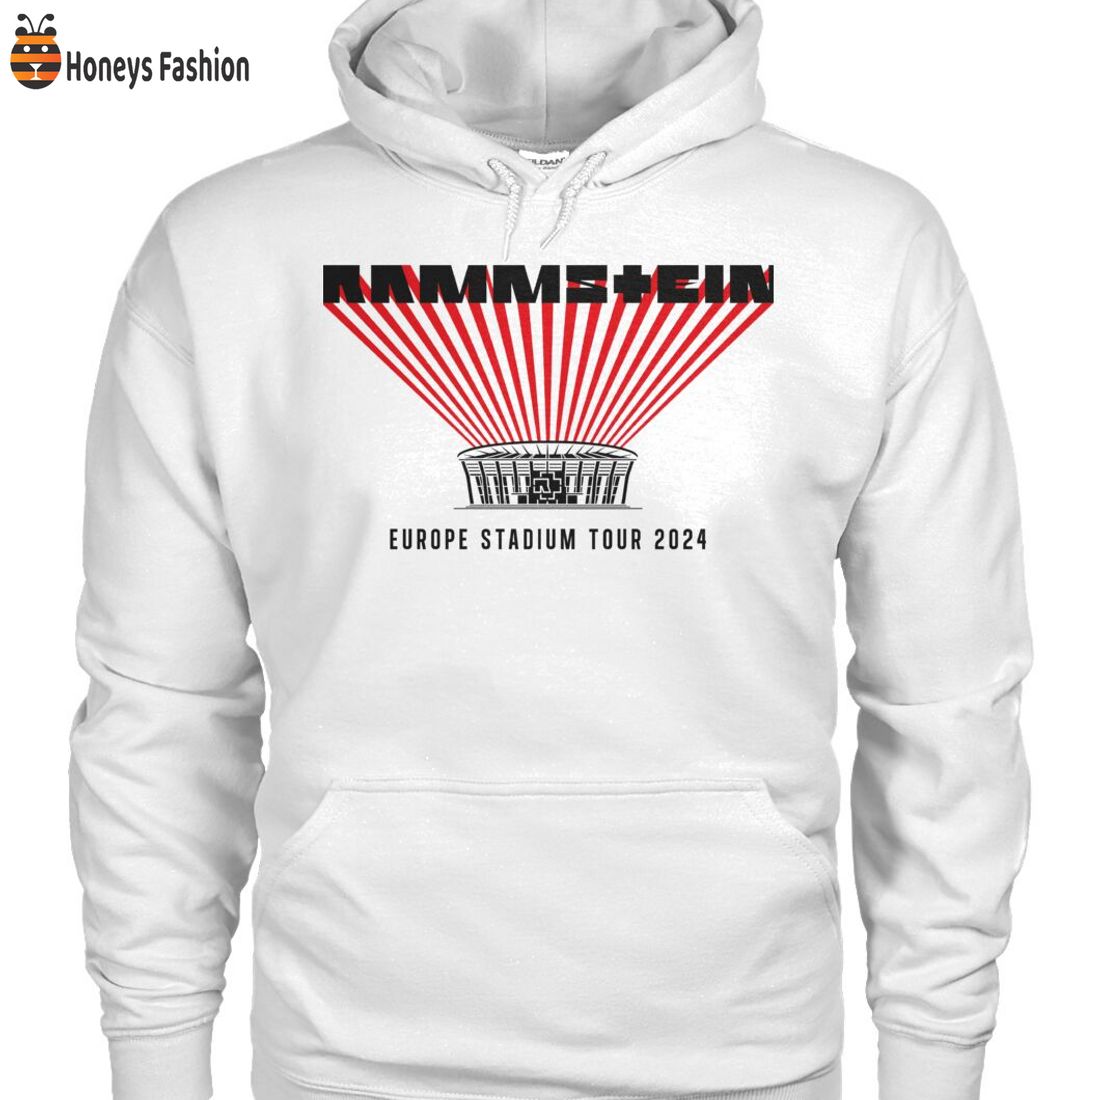 BEST SELLER Europe Stadium Tour 2024 Rammstein Shirt